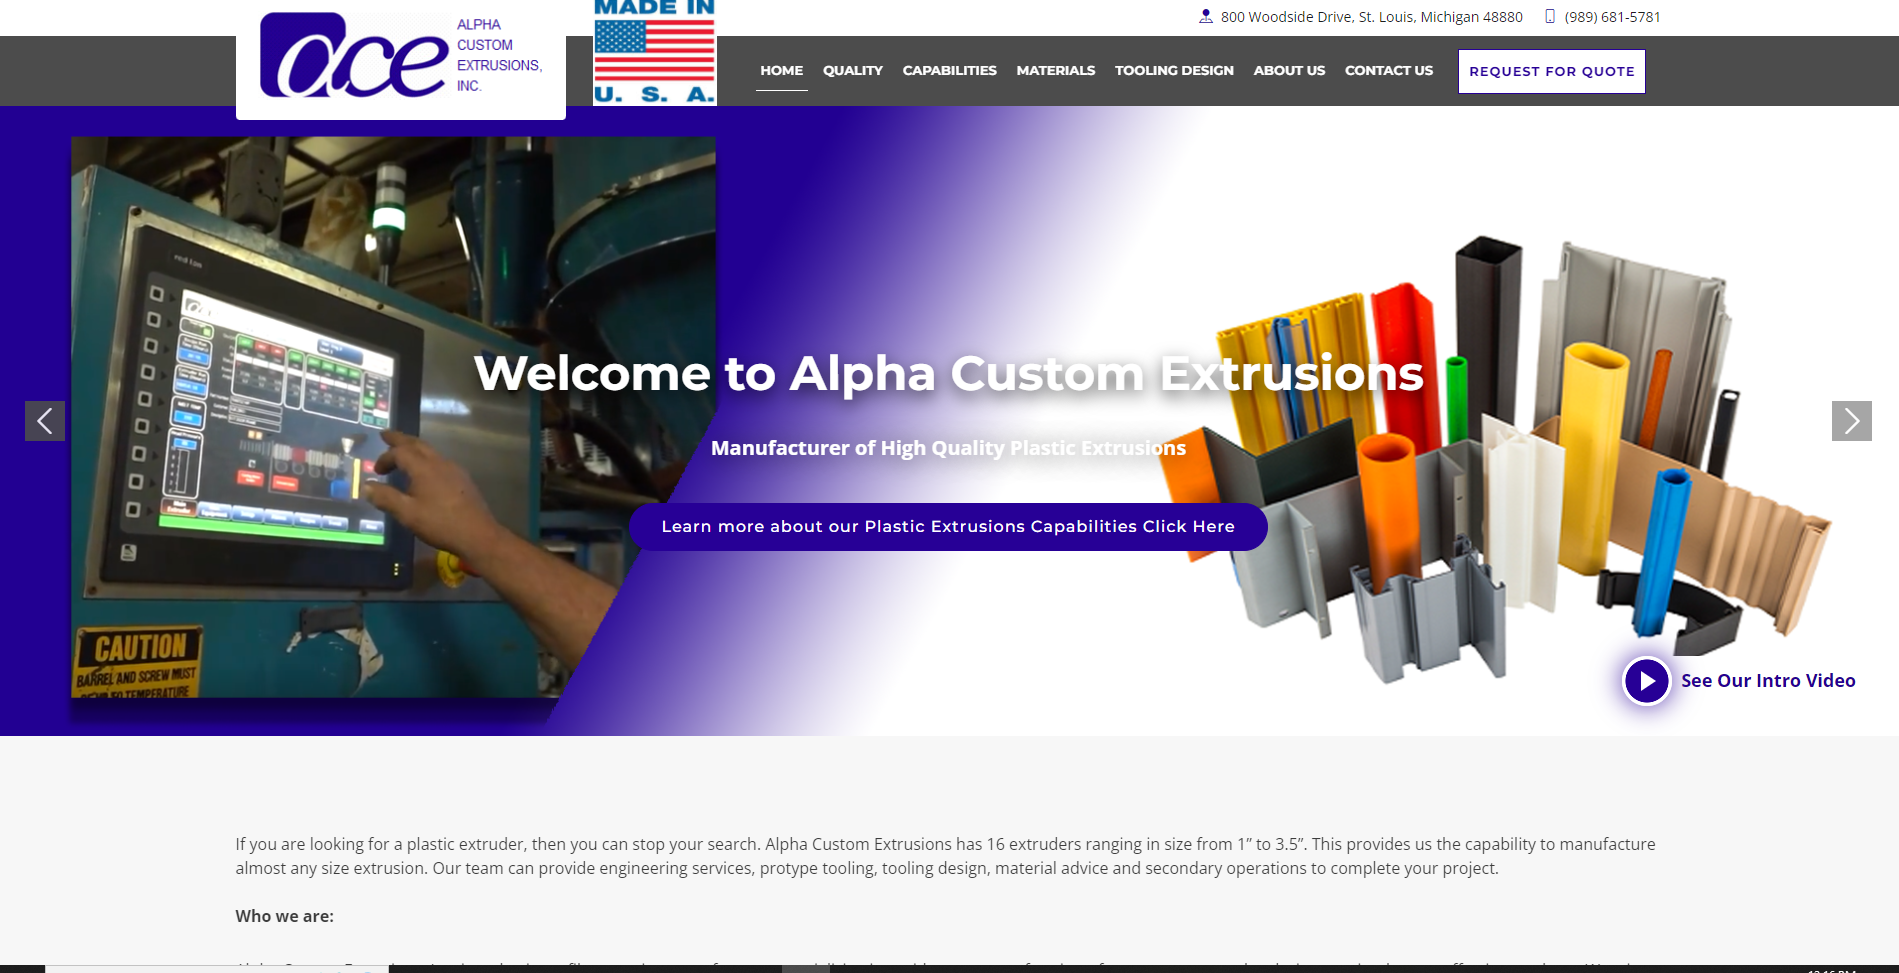 Web Design for Alpha Custom Extrusions Inc.